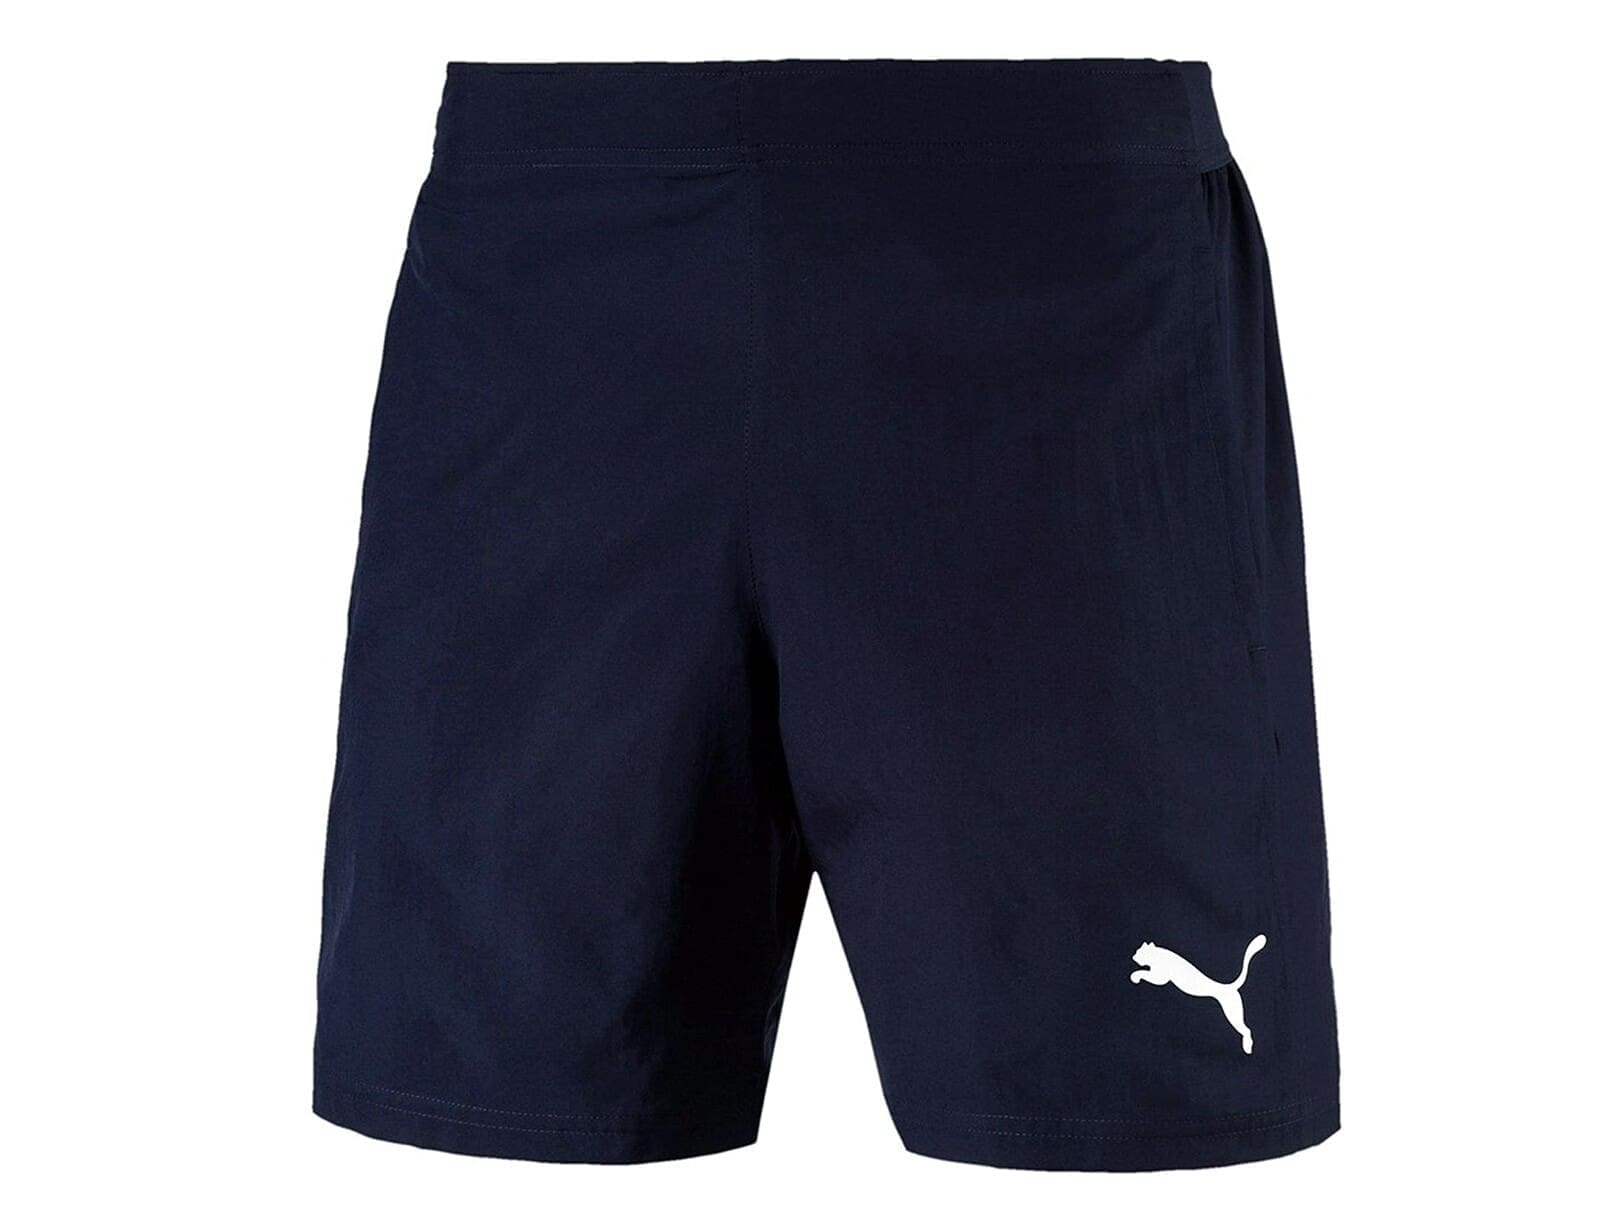 Puma - LIGA Sideline Woven Shorts - Voetbal Shorts